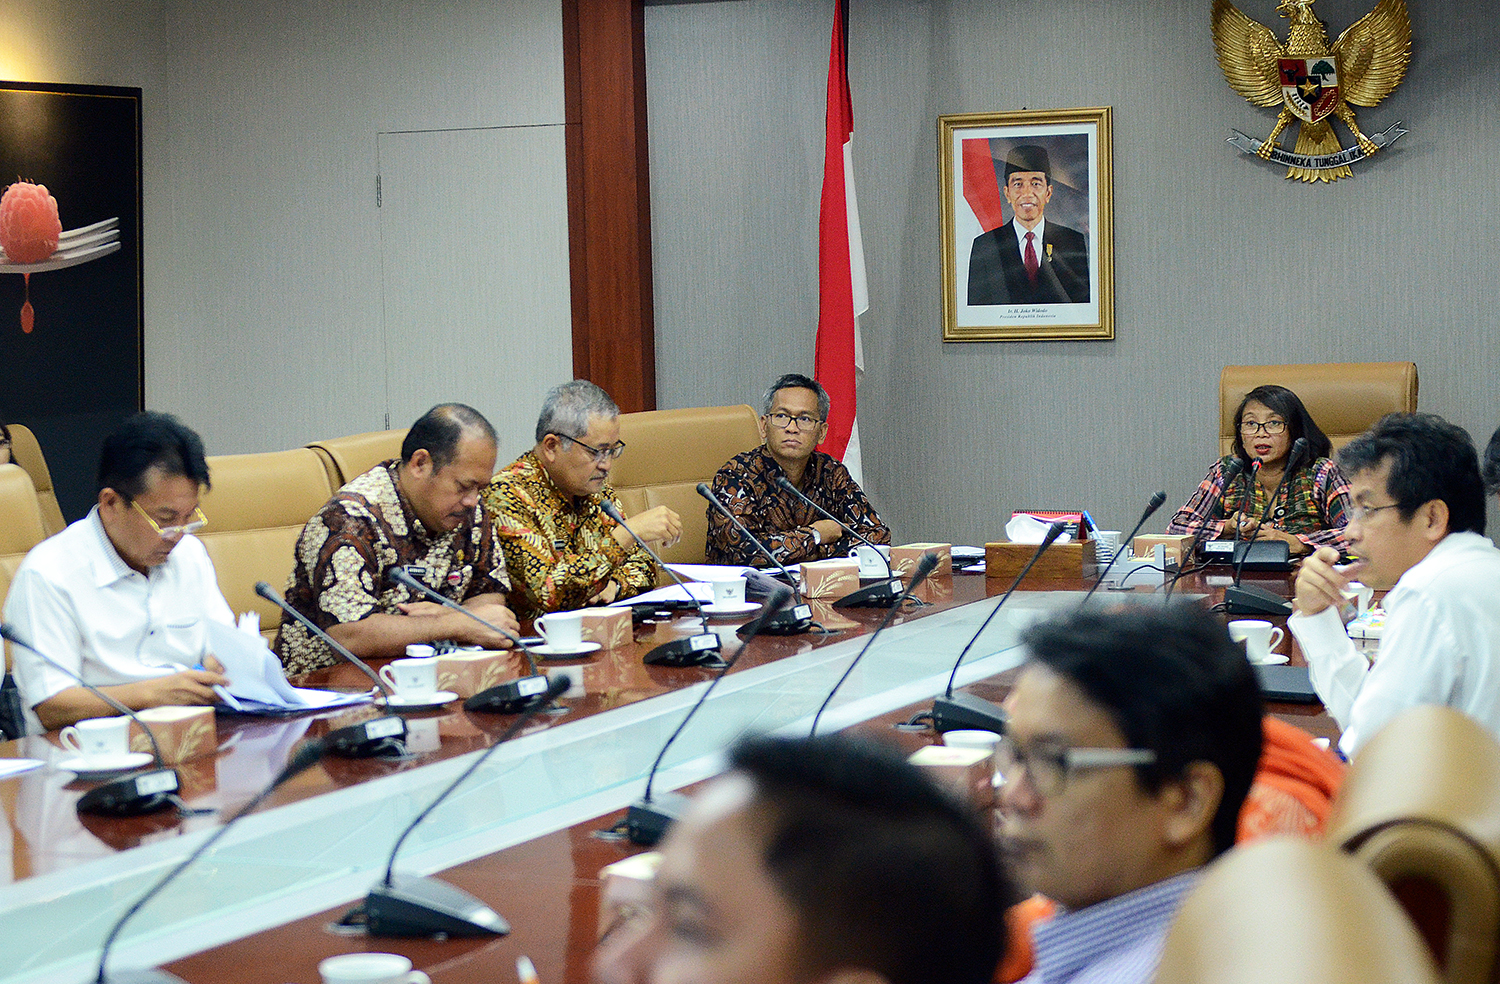 Waseskab Ratih Nurdiati memimpin rapat koordinasi dengan perwakilan sejumlah K/L untuk mempersiapkan rapat terbatas, di Gedung III Kemensetneg, Rabu (22/2) pagi. (Foto: Agung/Humas)